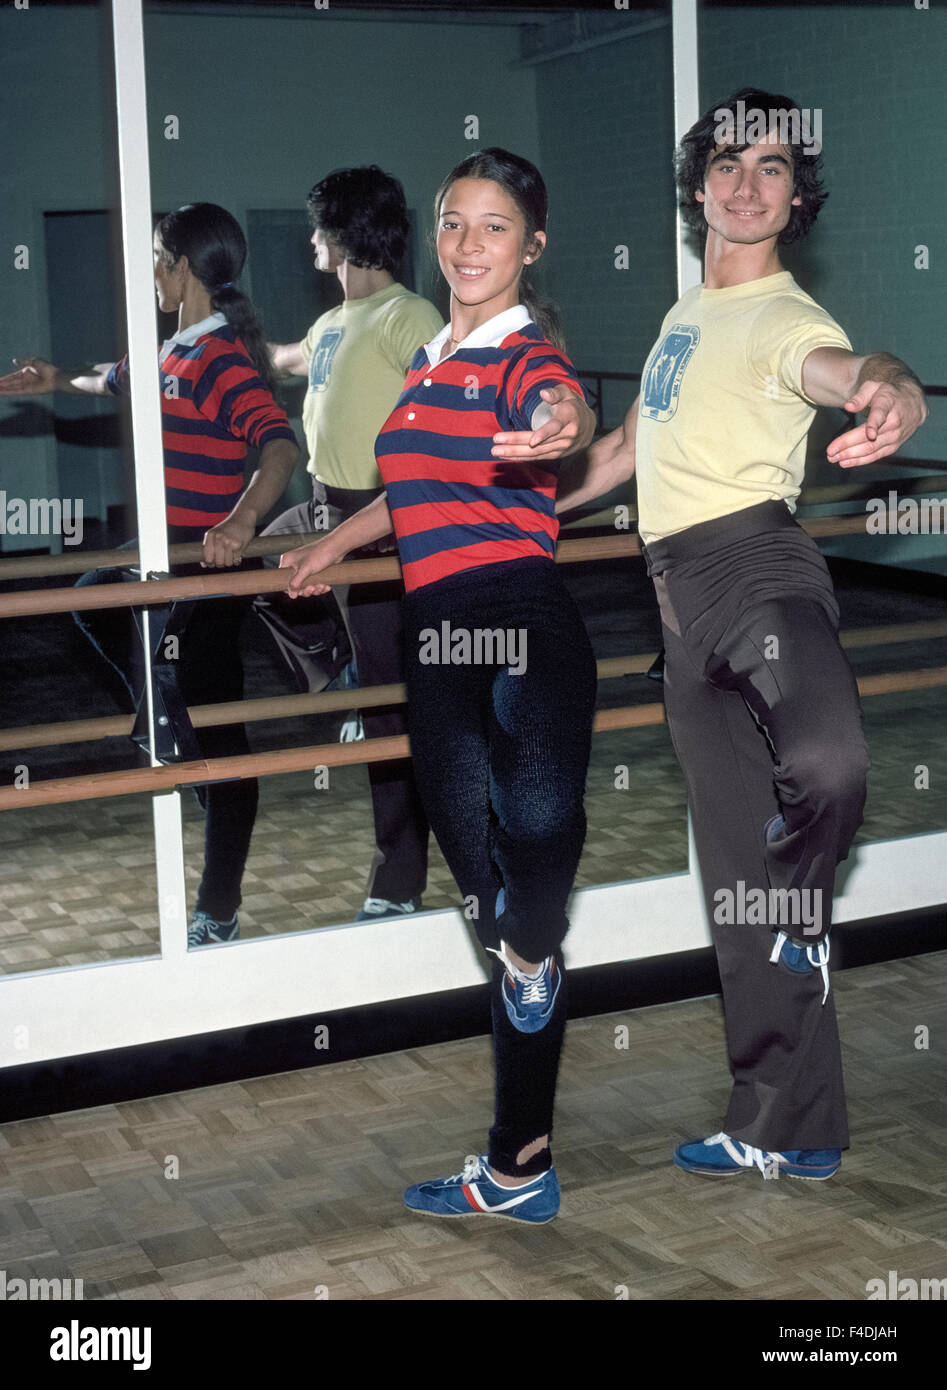 Amerikanische Jugendliche Tai Babilonia, 18, und Randy Gardner, 19, üben vor dem üben ihre paar Eislaufen Routinen im Jahr 1977 eine Eisbahn in Süd-Kalifornien, USA. Sie gewann die Goldmedaille bei der Eiskunstlauf-Weltmeisterschaft 1979 und qualifizierte sich für die Olympischen Winterspiele 1976 und 1980. Das junge Paar gewann auch fünf US-Meisterschaften in Folge von 1976 bis 1980. Die Promi-Skater waren die star Performer im Ice Capades zeigt von 1980 bis 1983. Das Paar blieb skating Partner seit fast 40 Jahren bis zu seinem Ausscheiden aus dem Sport in 2008. Historisches Foto. Stockfoto